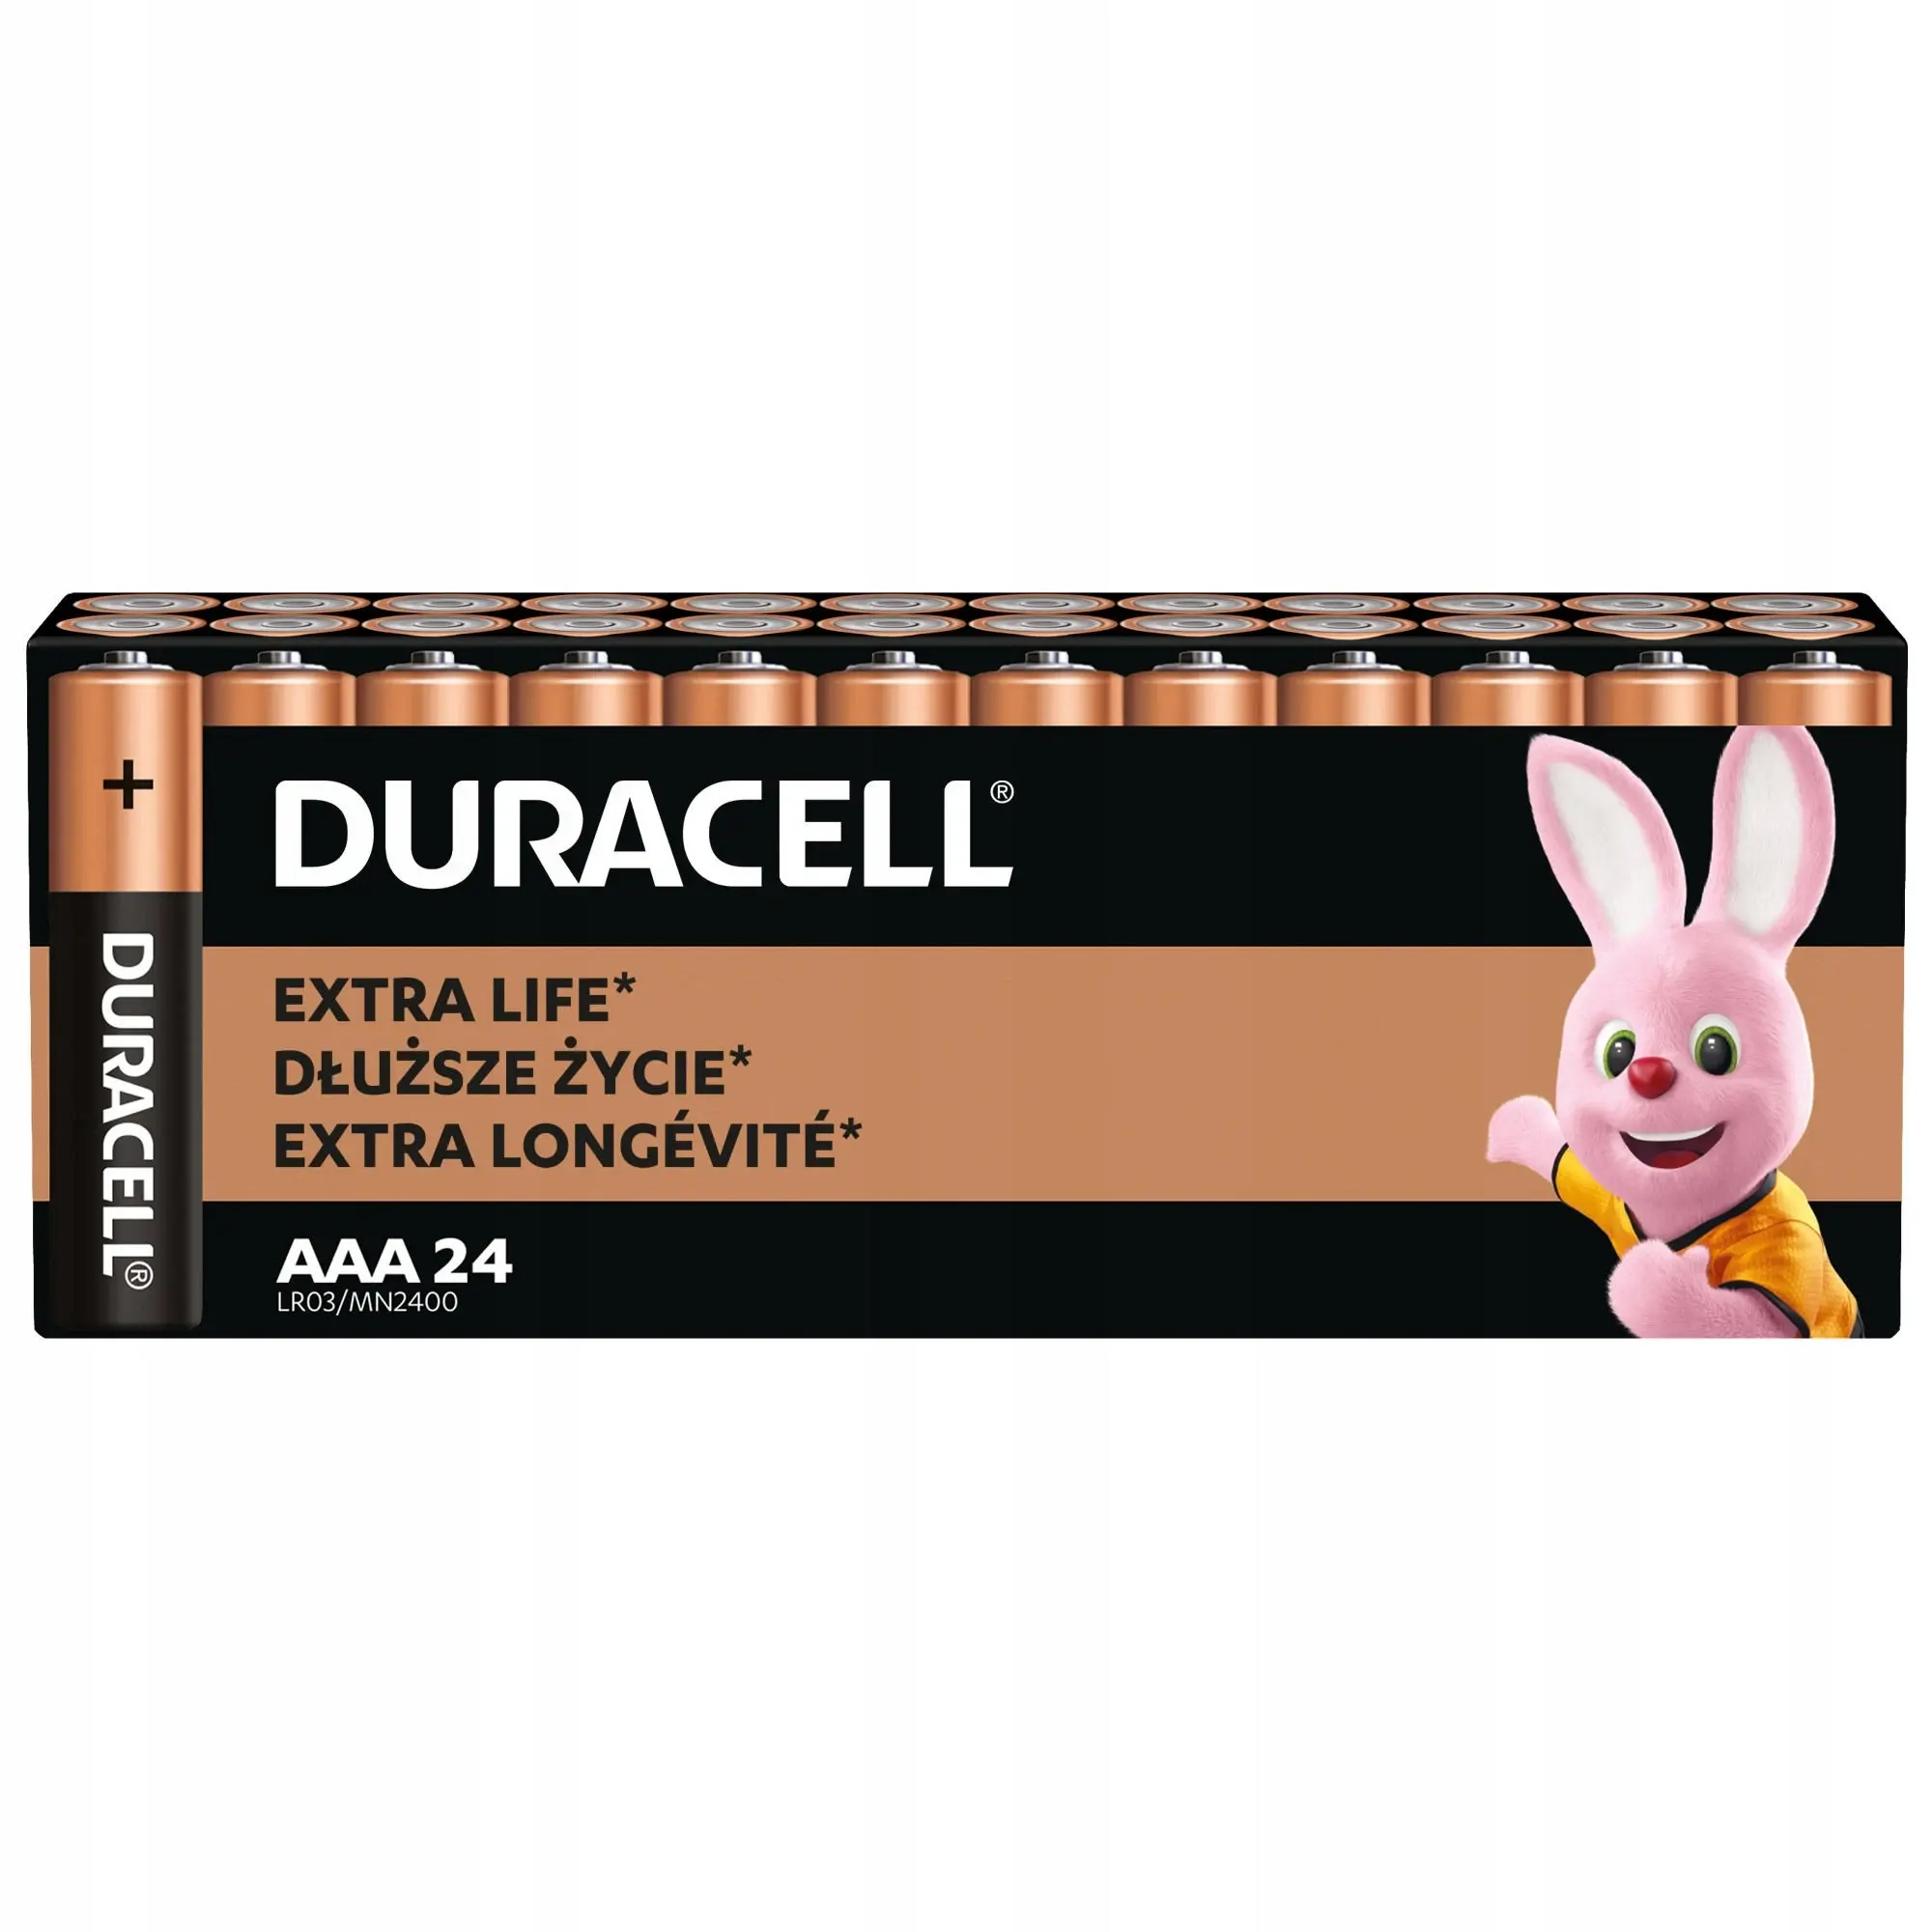 24 stuks Duracell Batterijen Aaa